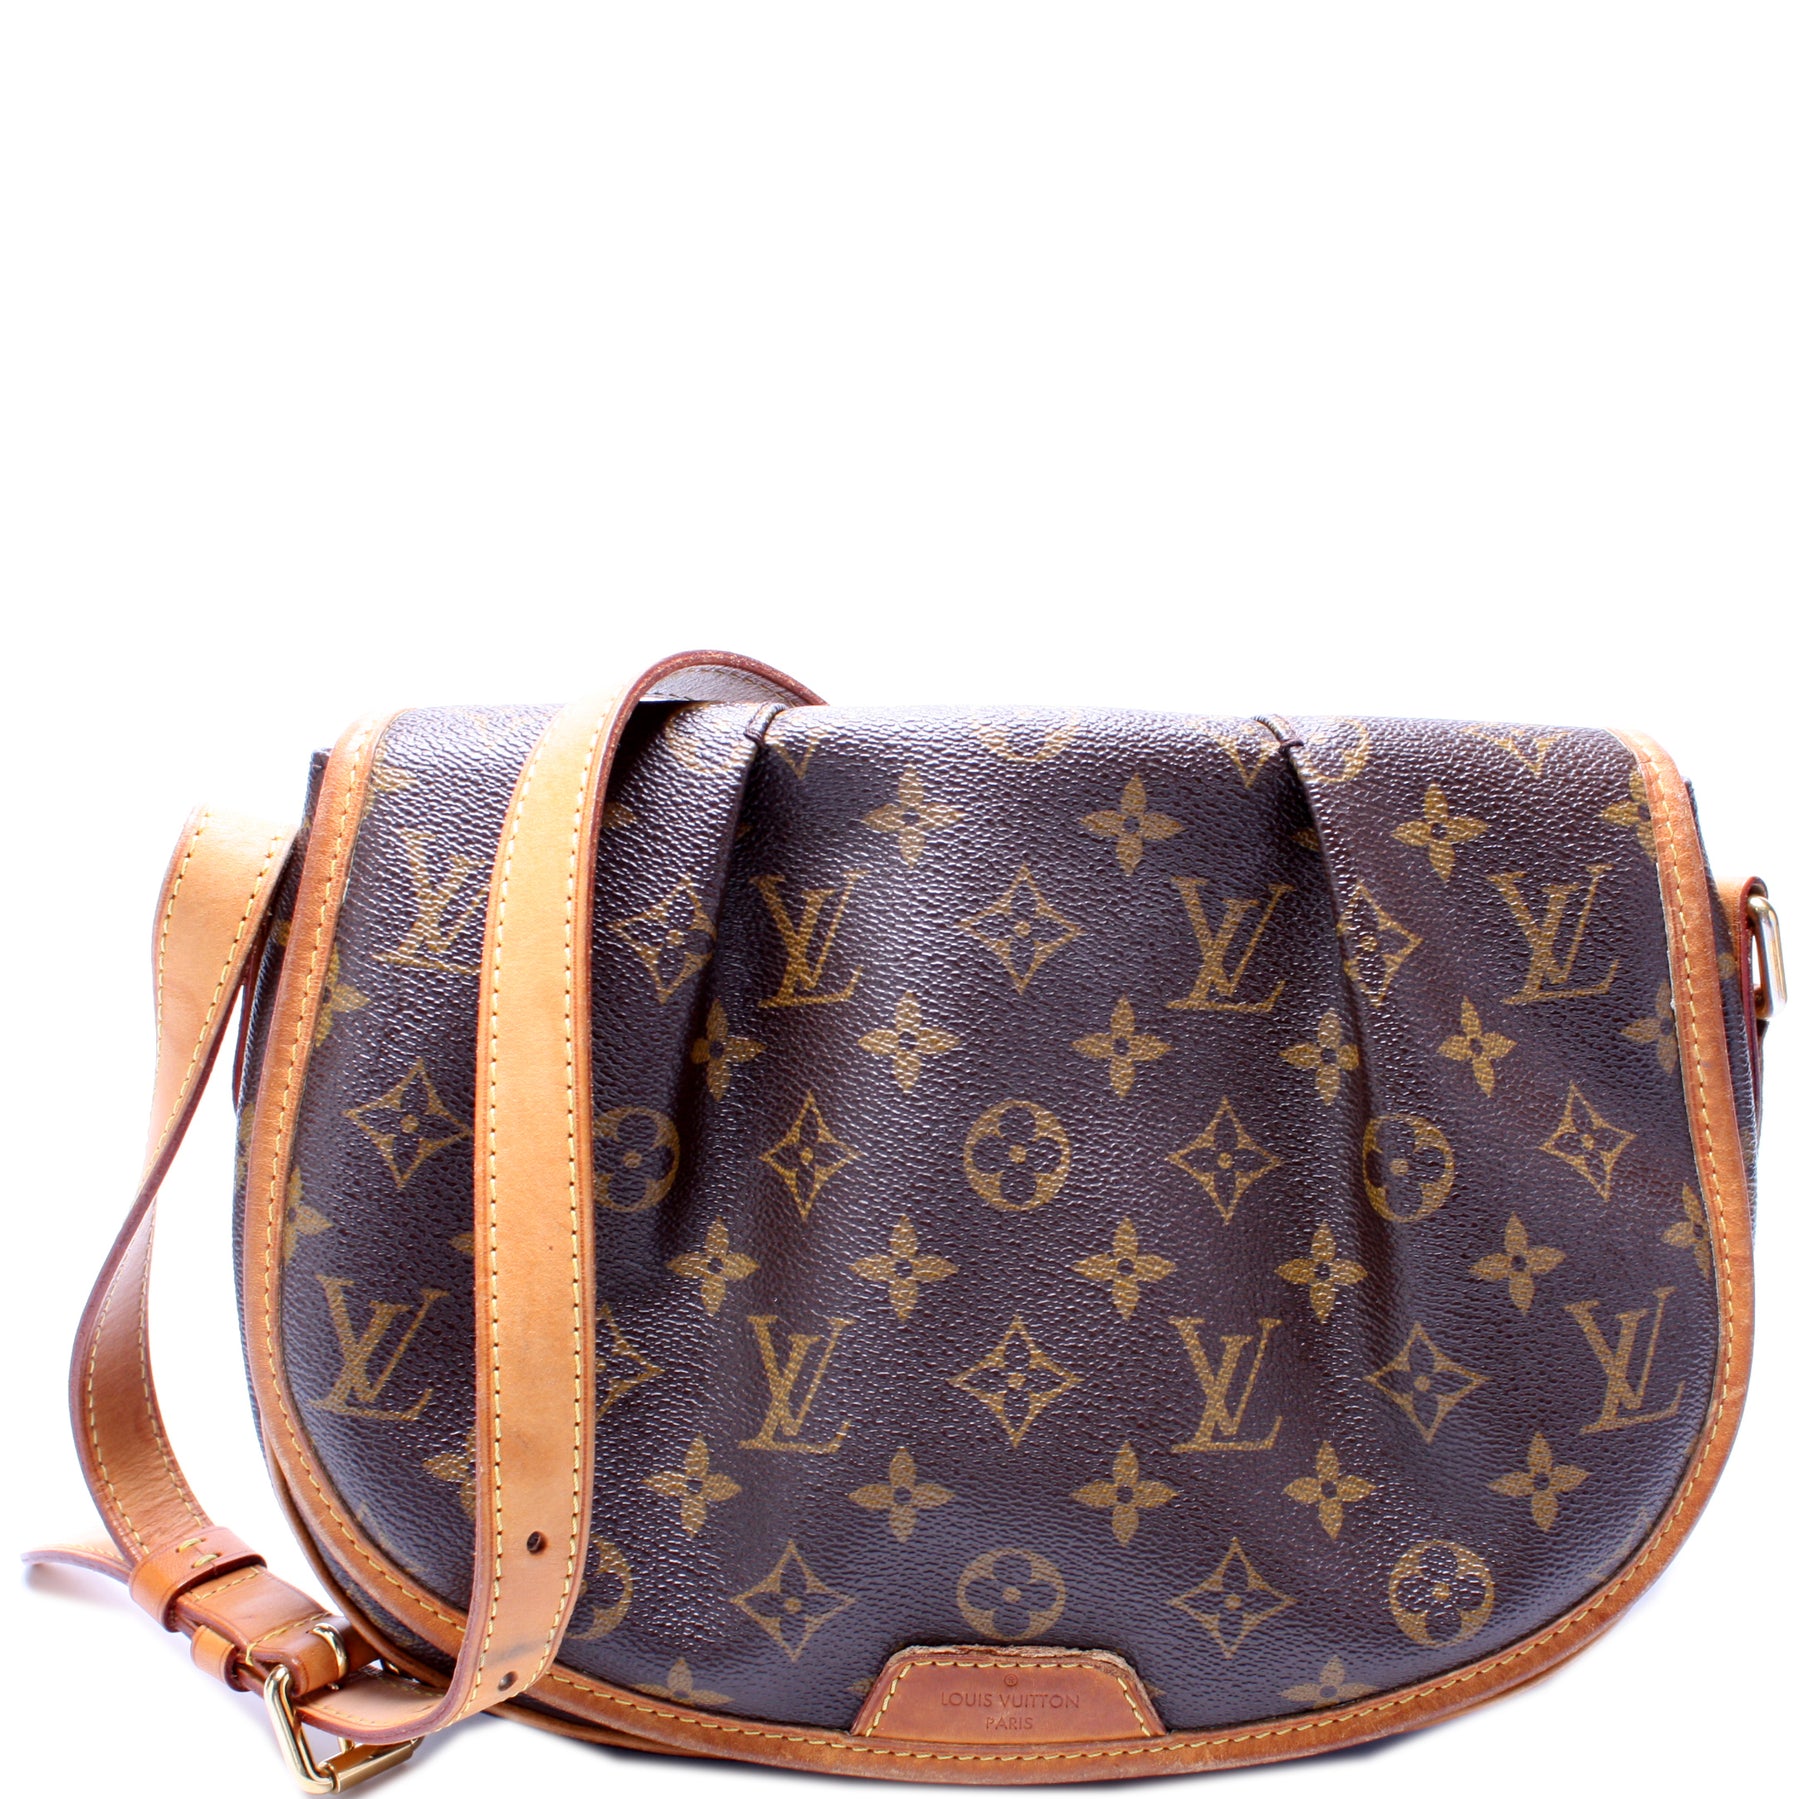 AUTHENTIC Louis Vuitton Monogram Menilmontant PM Shoulder Bag